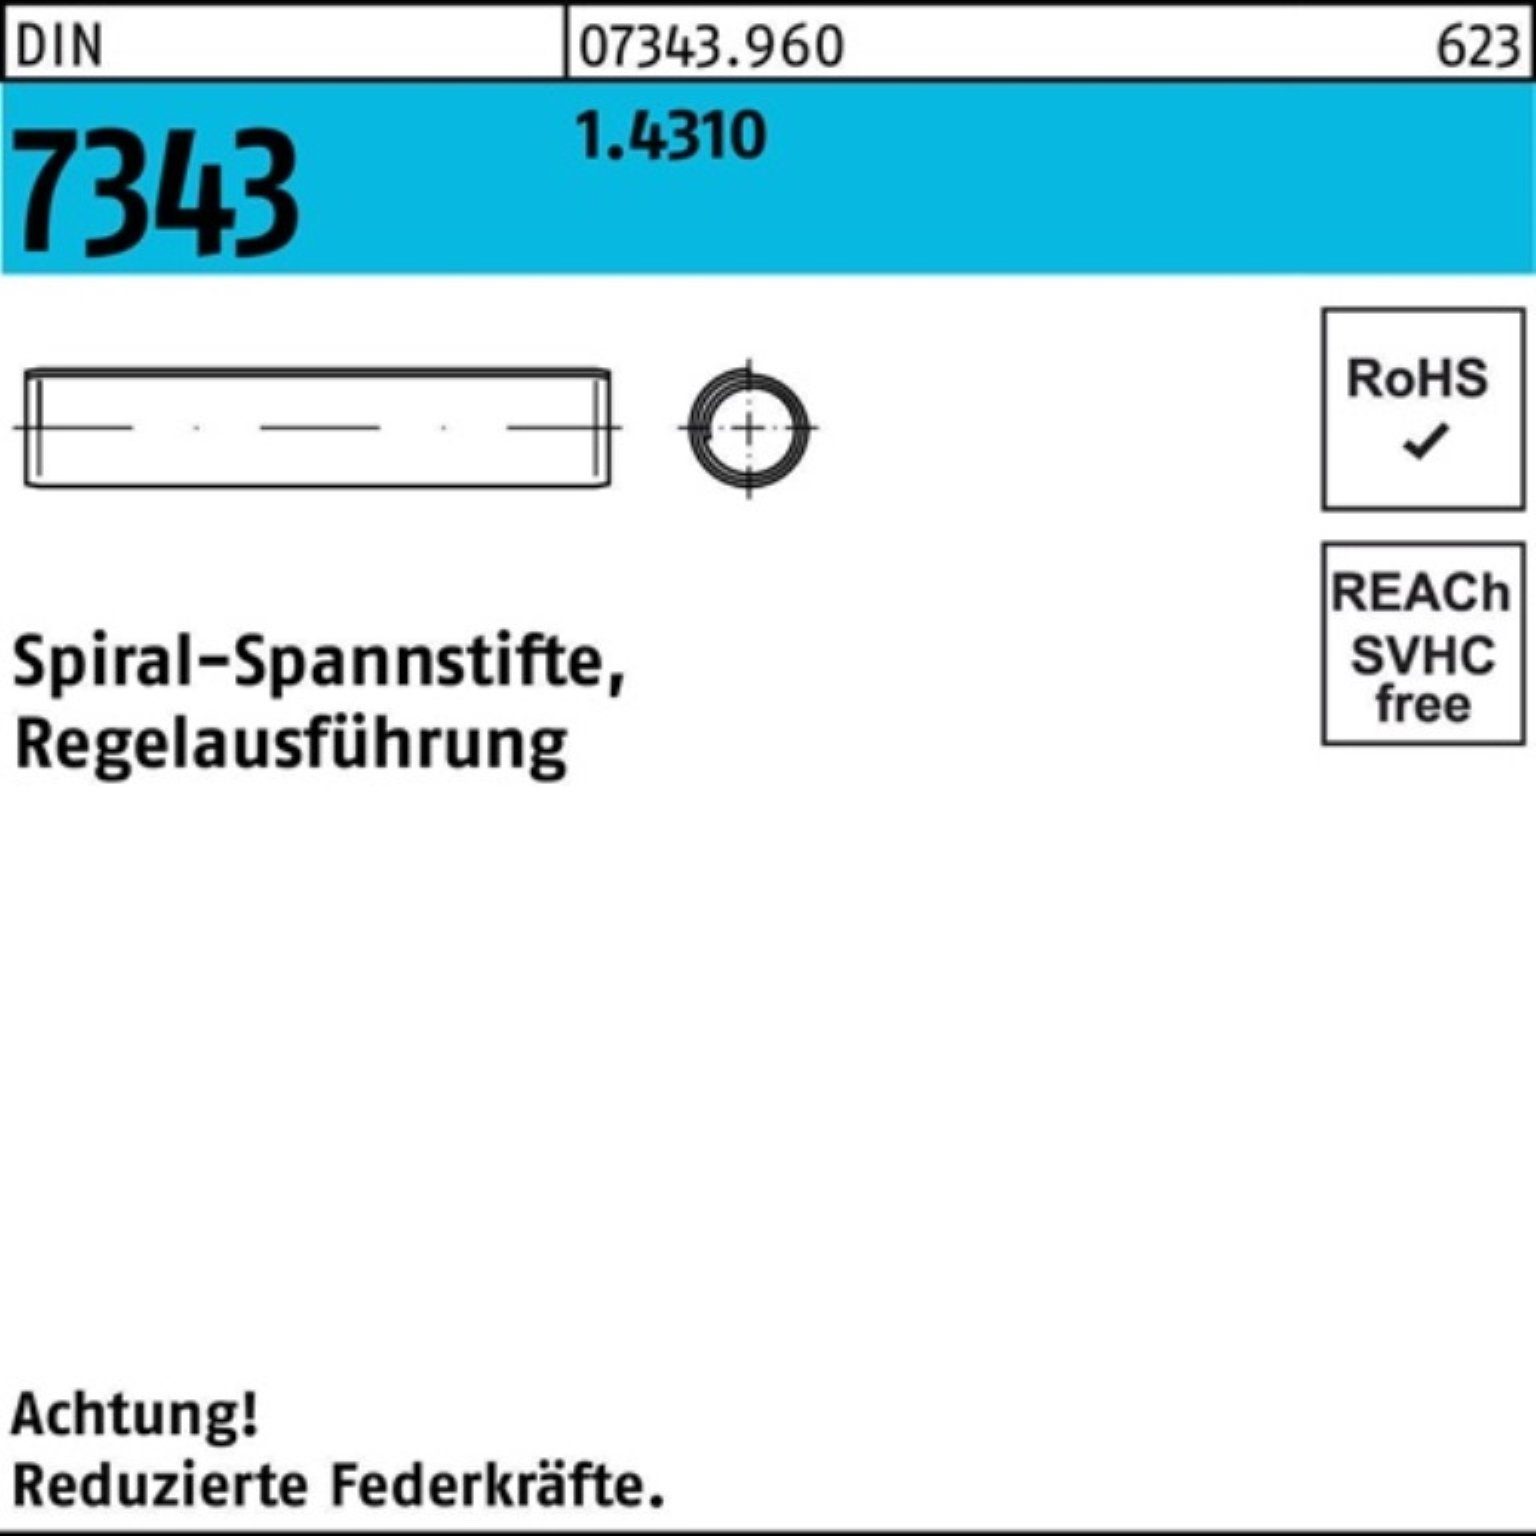 7343/ISO Spiralspannstift DIN Pack 5 8750 2x Spannstift 1.4310 Regelausf. Reyher 1000er